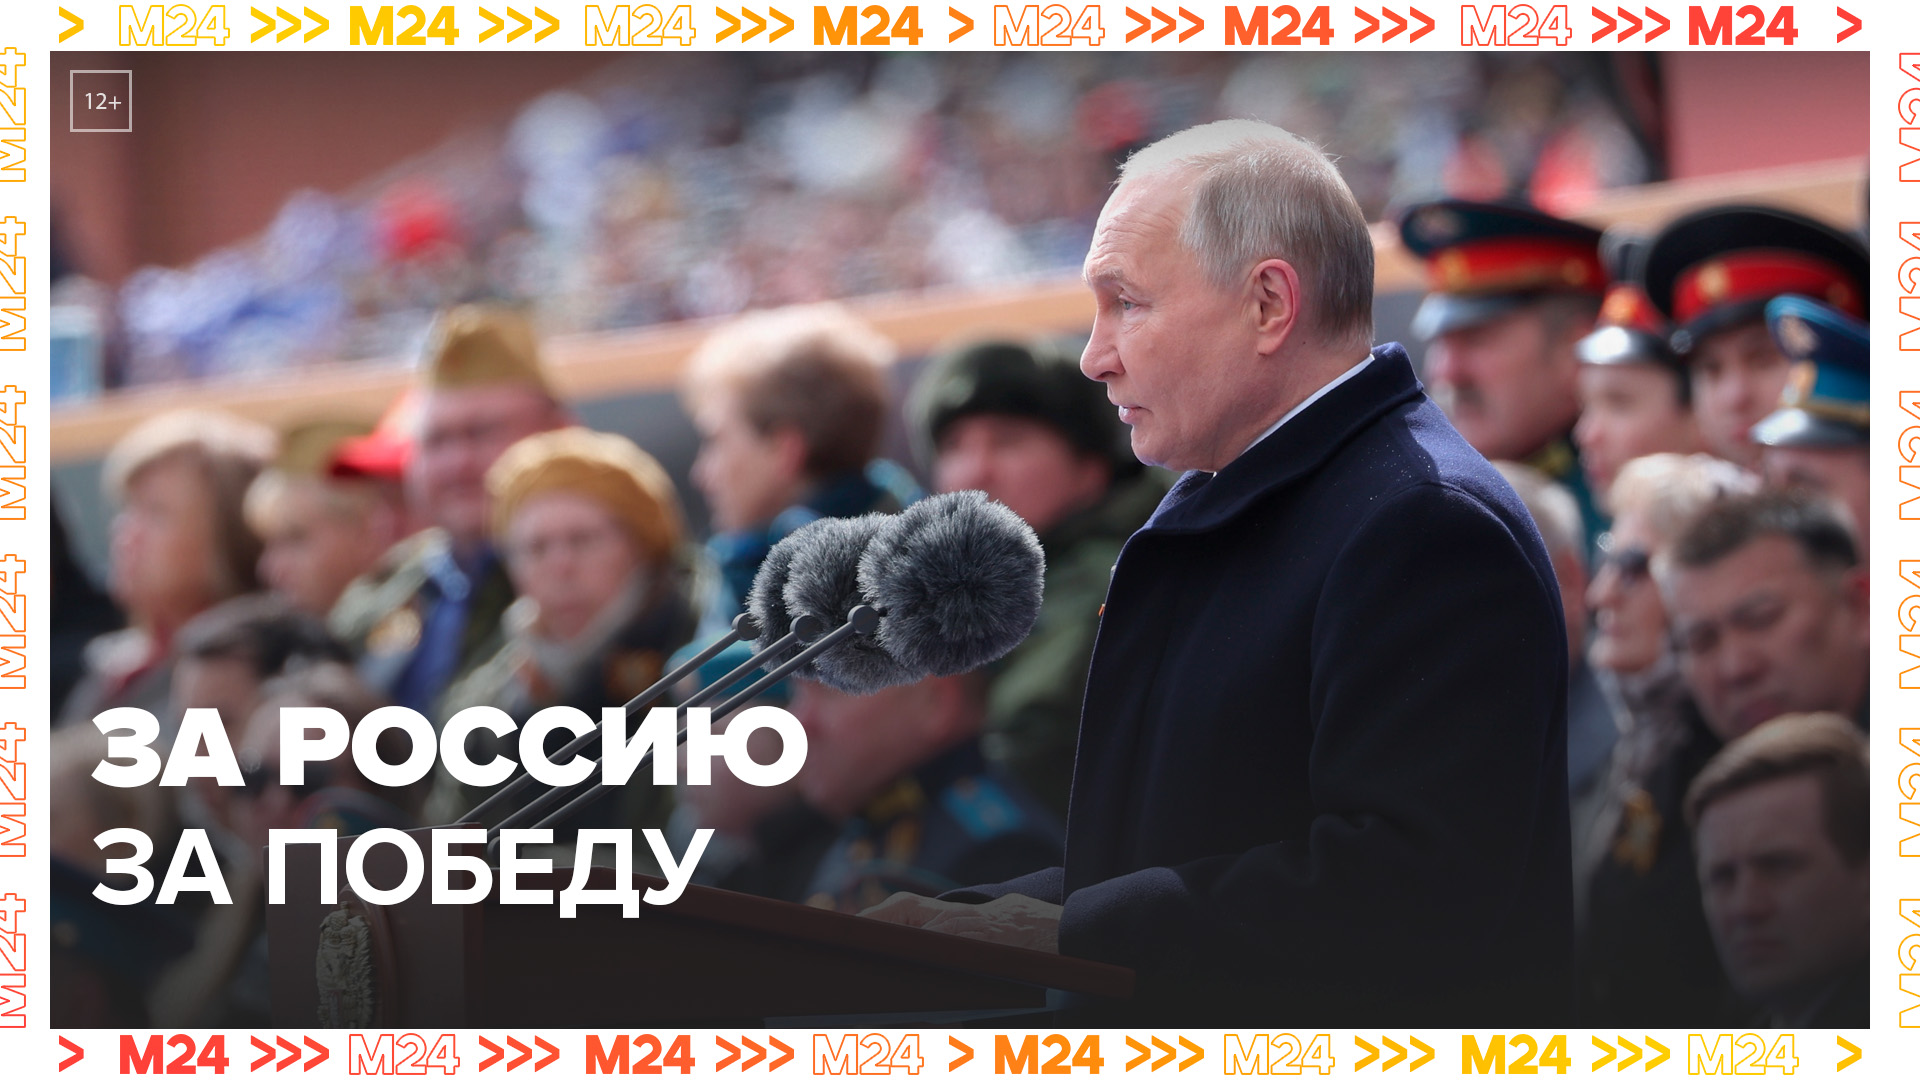 Путин завершил речь на параде на Красной площади словами "За Россию! За Победу!" - Москва 24